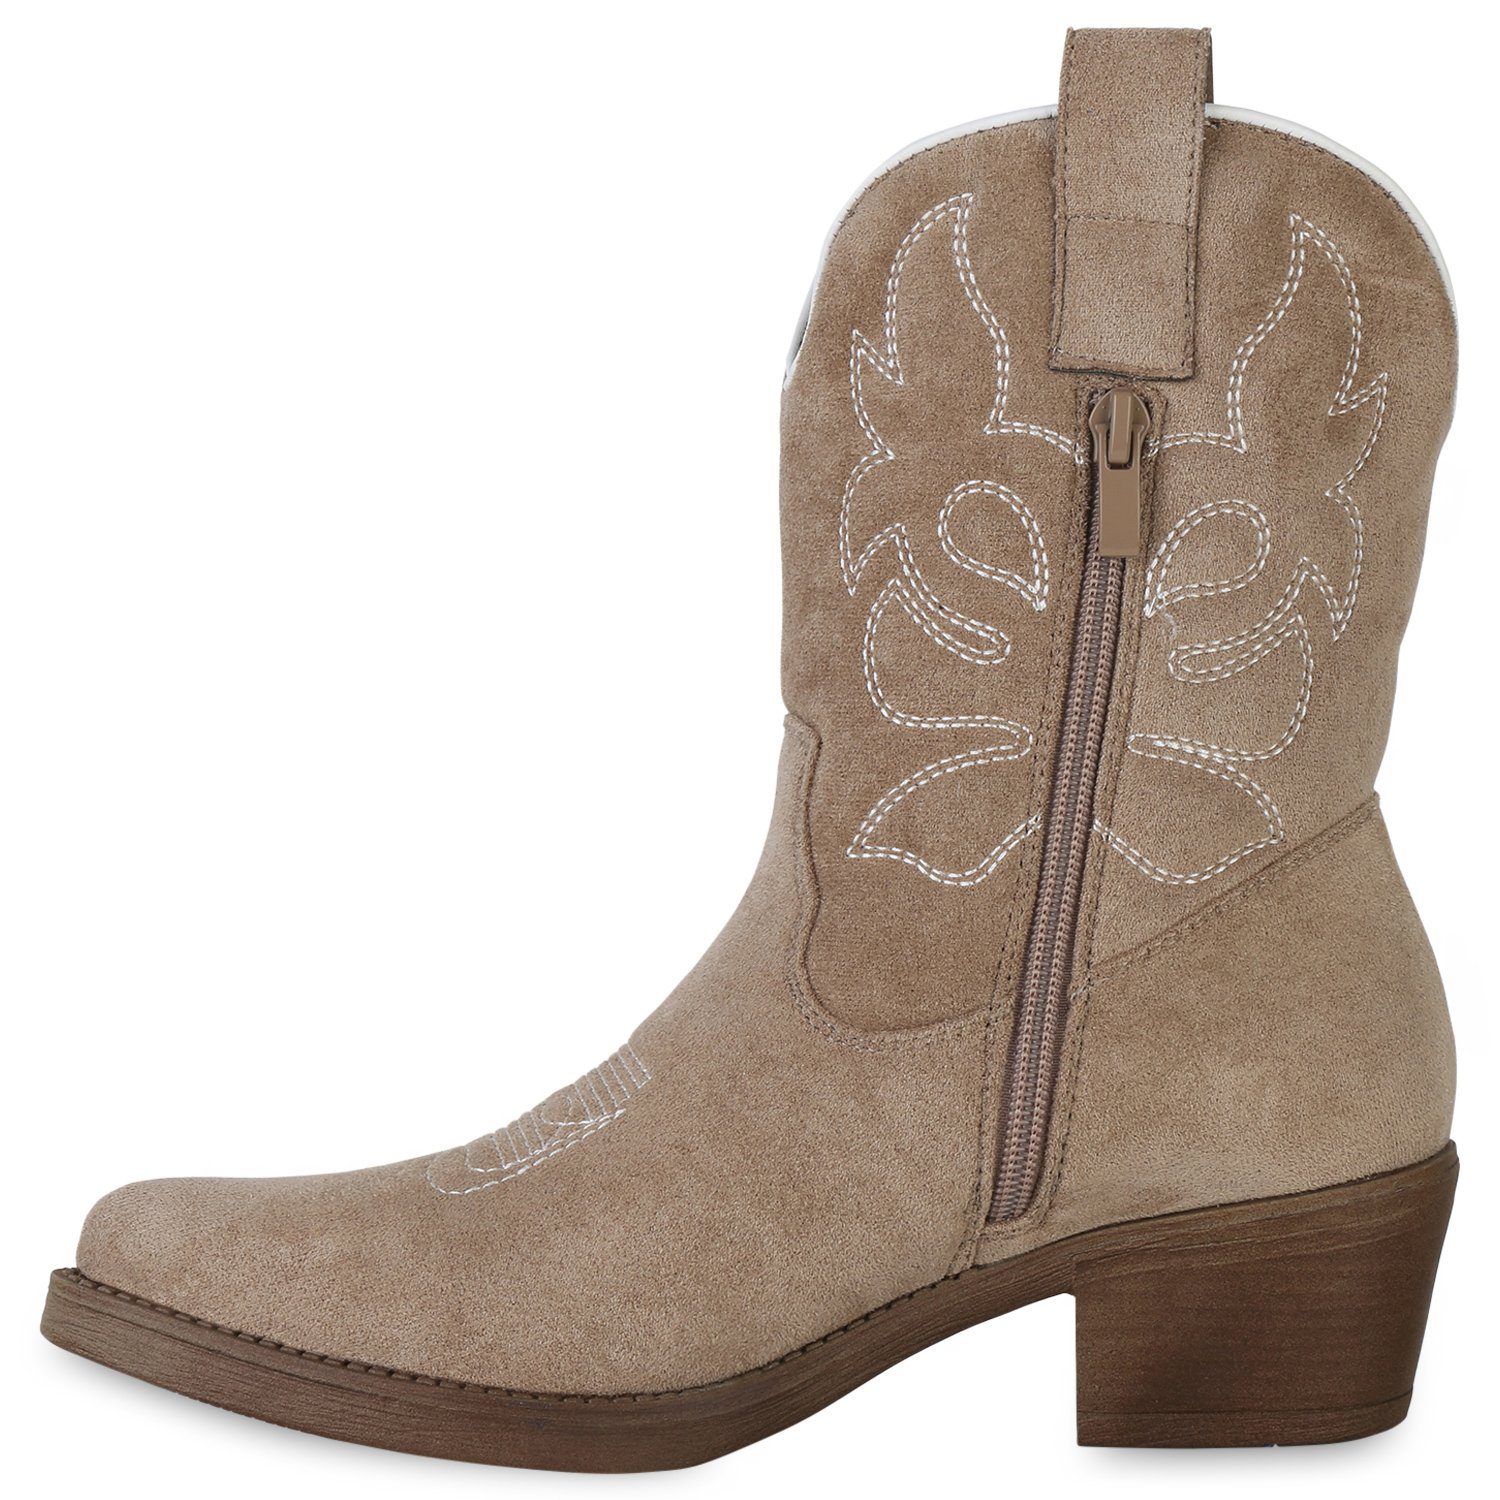 VAN Velours Schuhe HILL Khaki 840203 Cowboy Boots